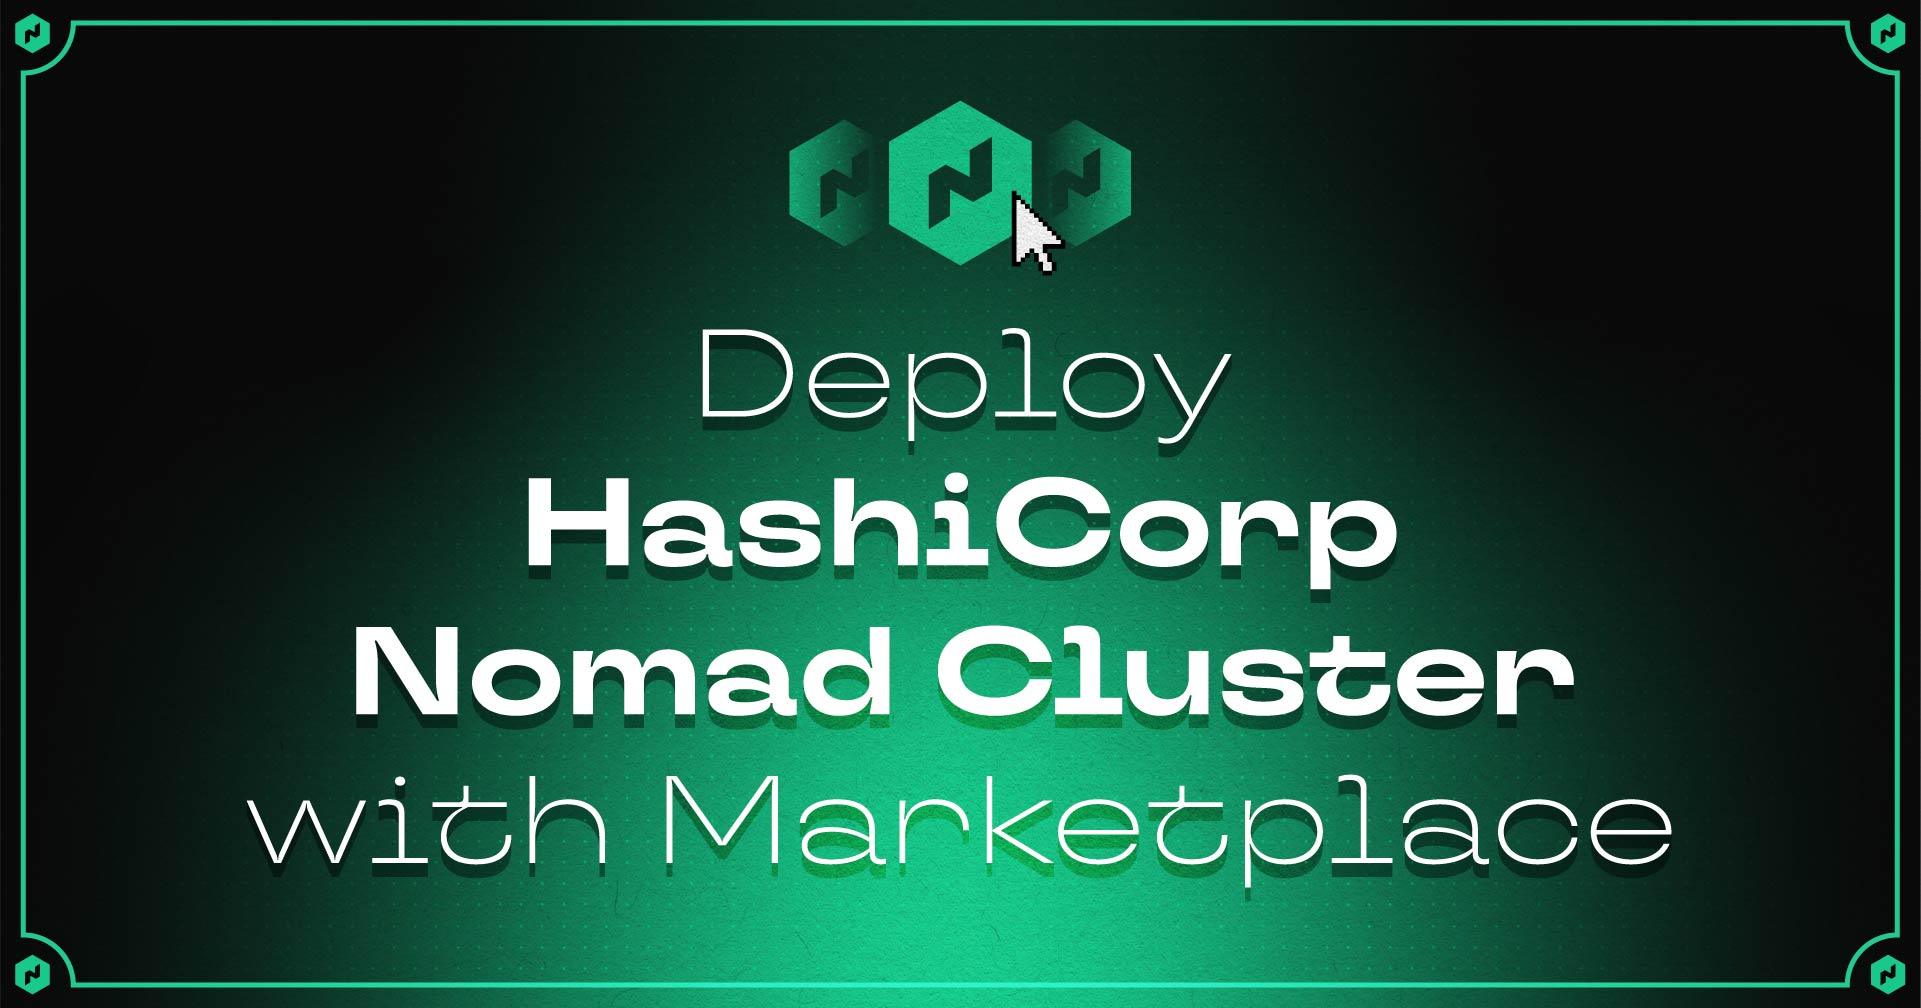 Implantar o HashiCorp Nomad Cluster com o Marketplace!